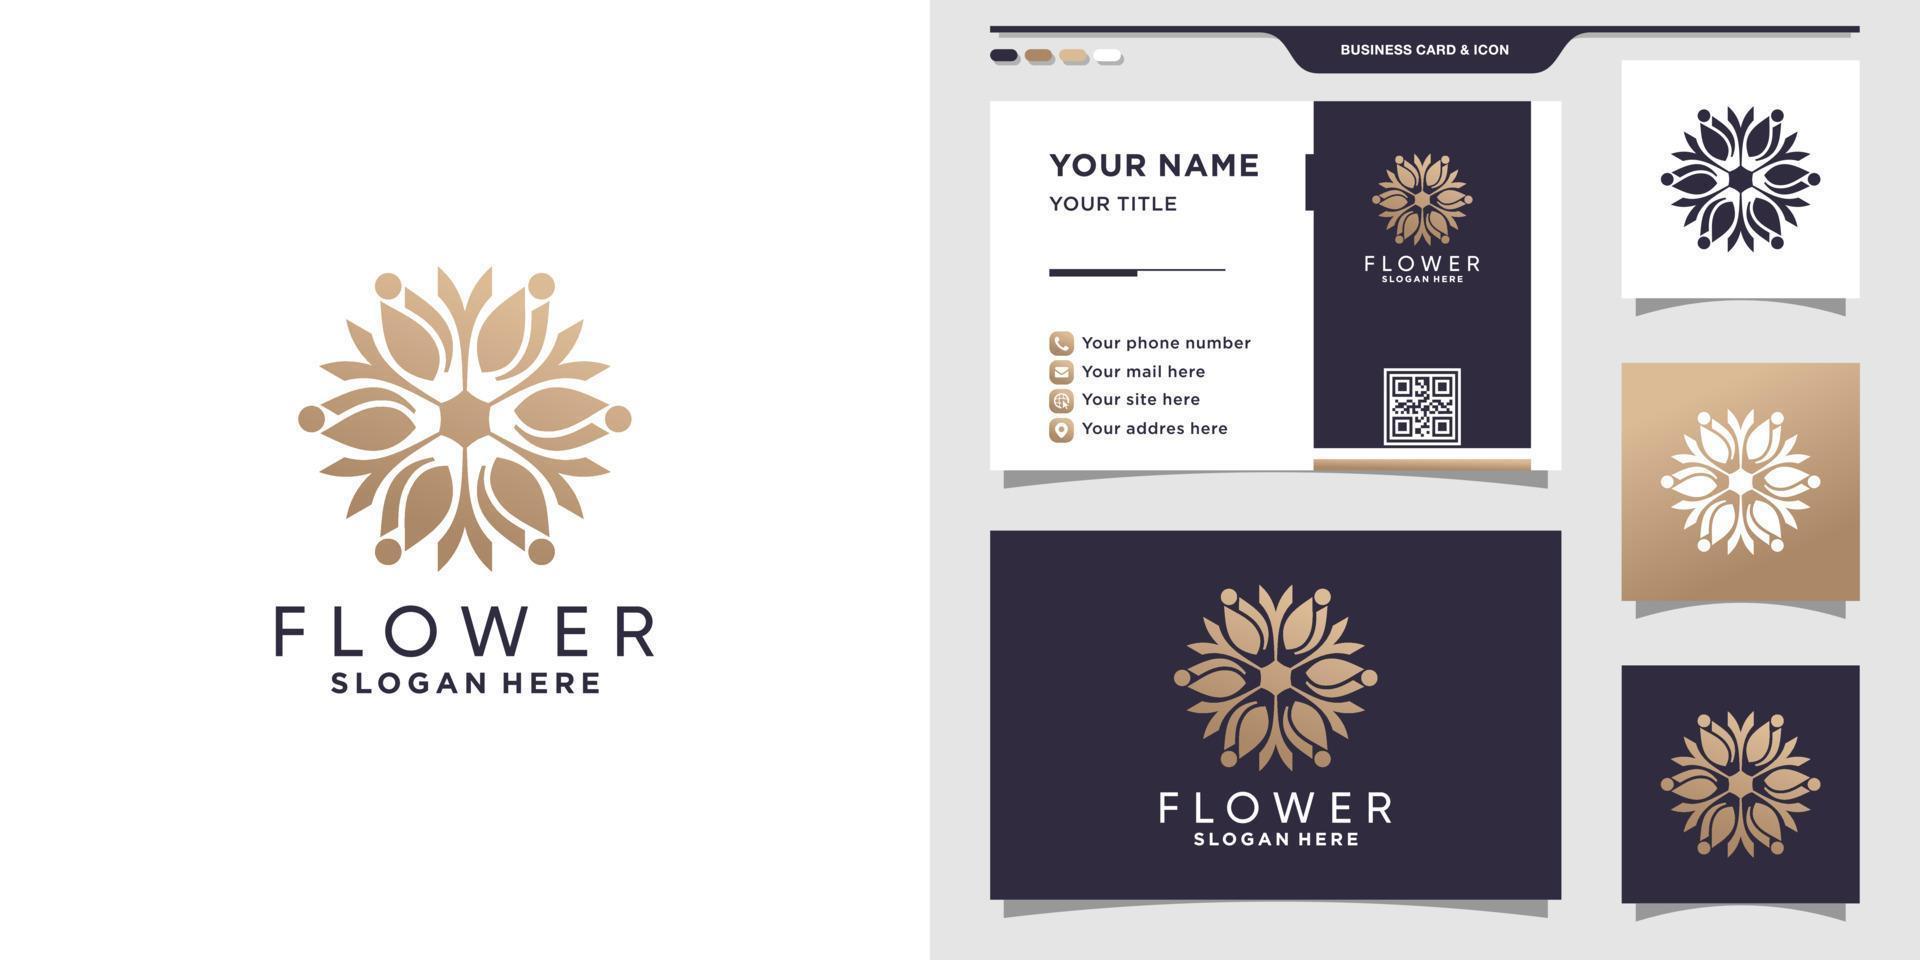 bloem logo ontwerpsjabloon met modern concept en visitekaartje vector